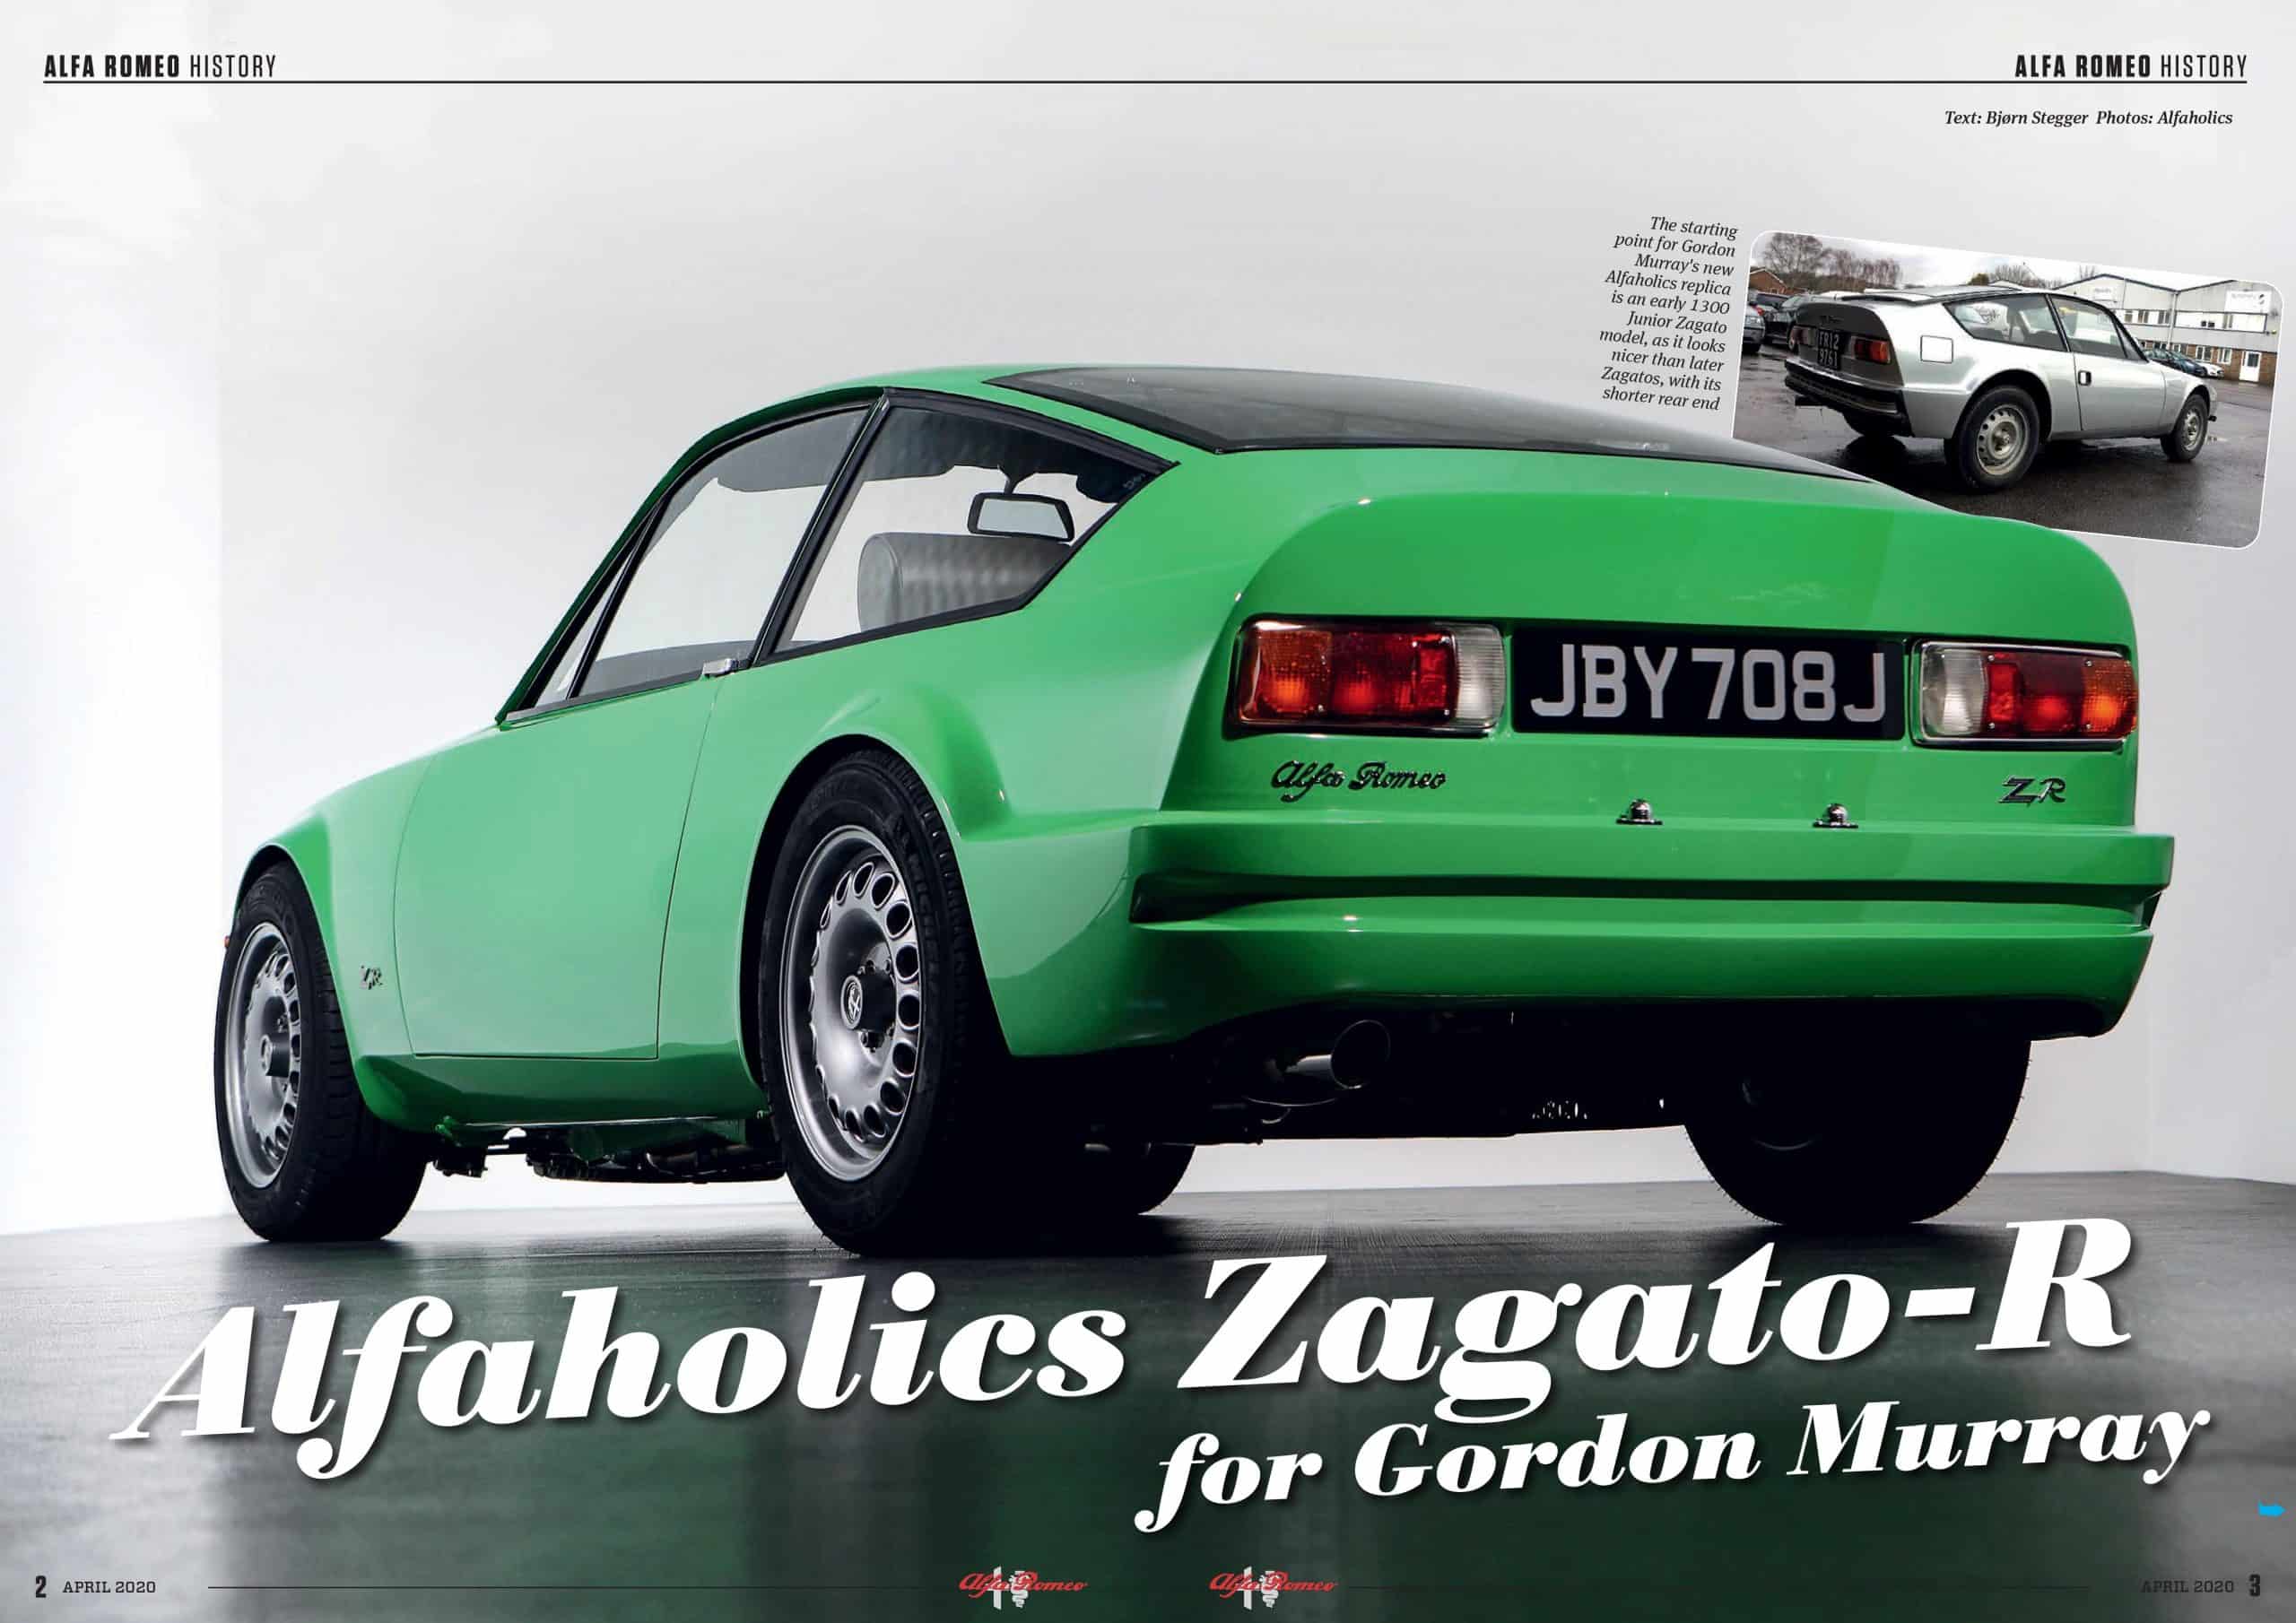 Alfa Romeo NYT - Alfaholics Zagato-R (April 2020)